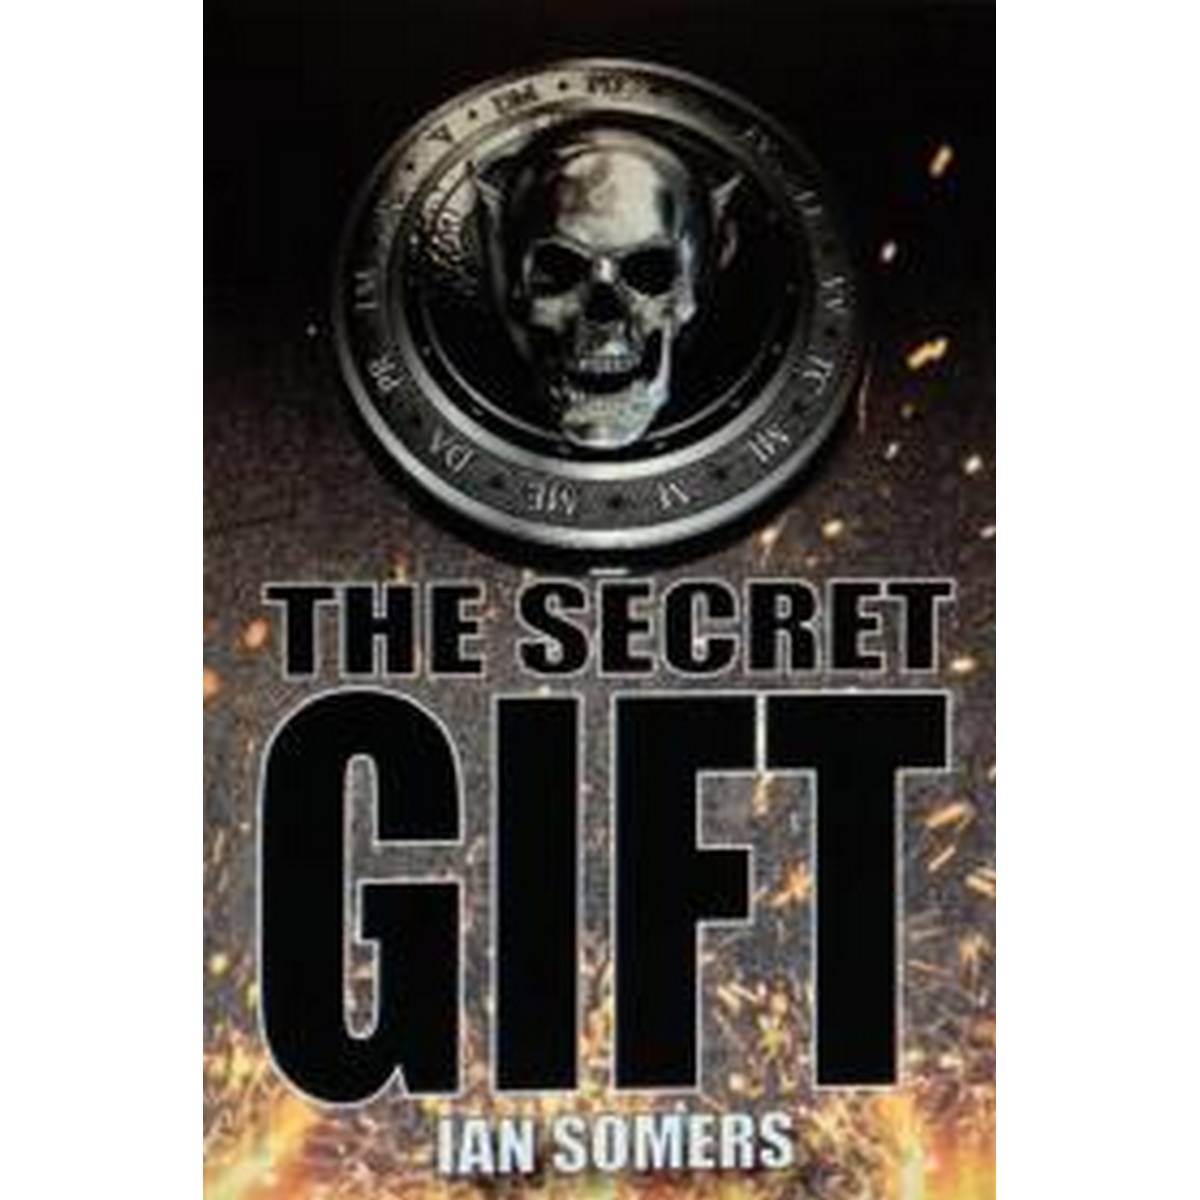 The Secret Gift: 3